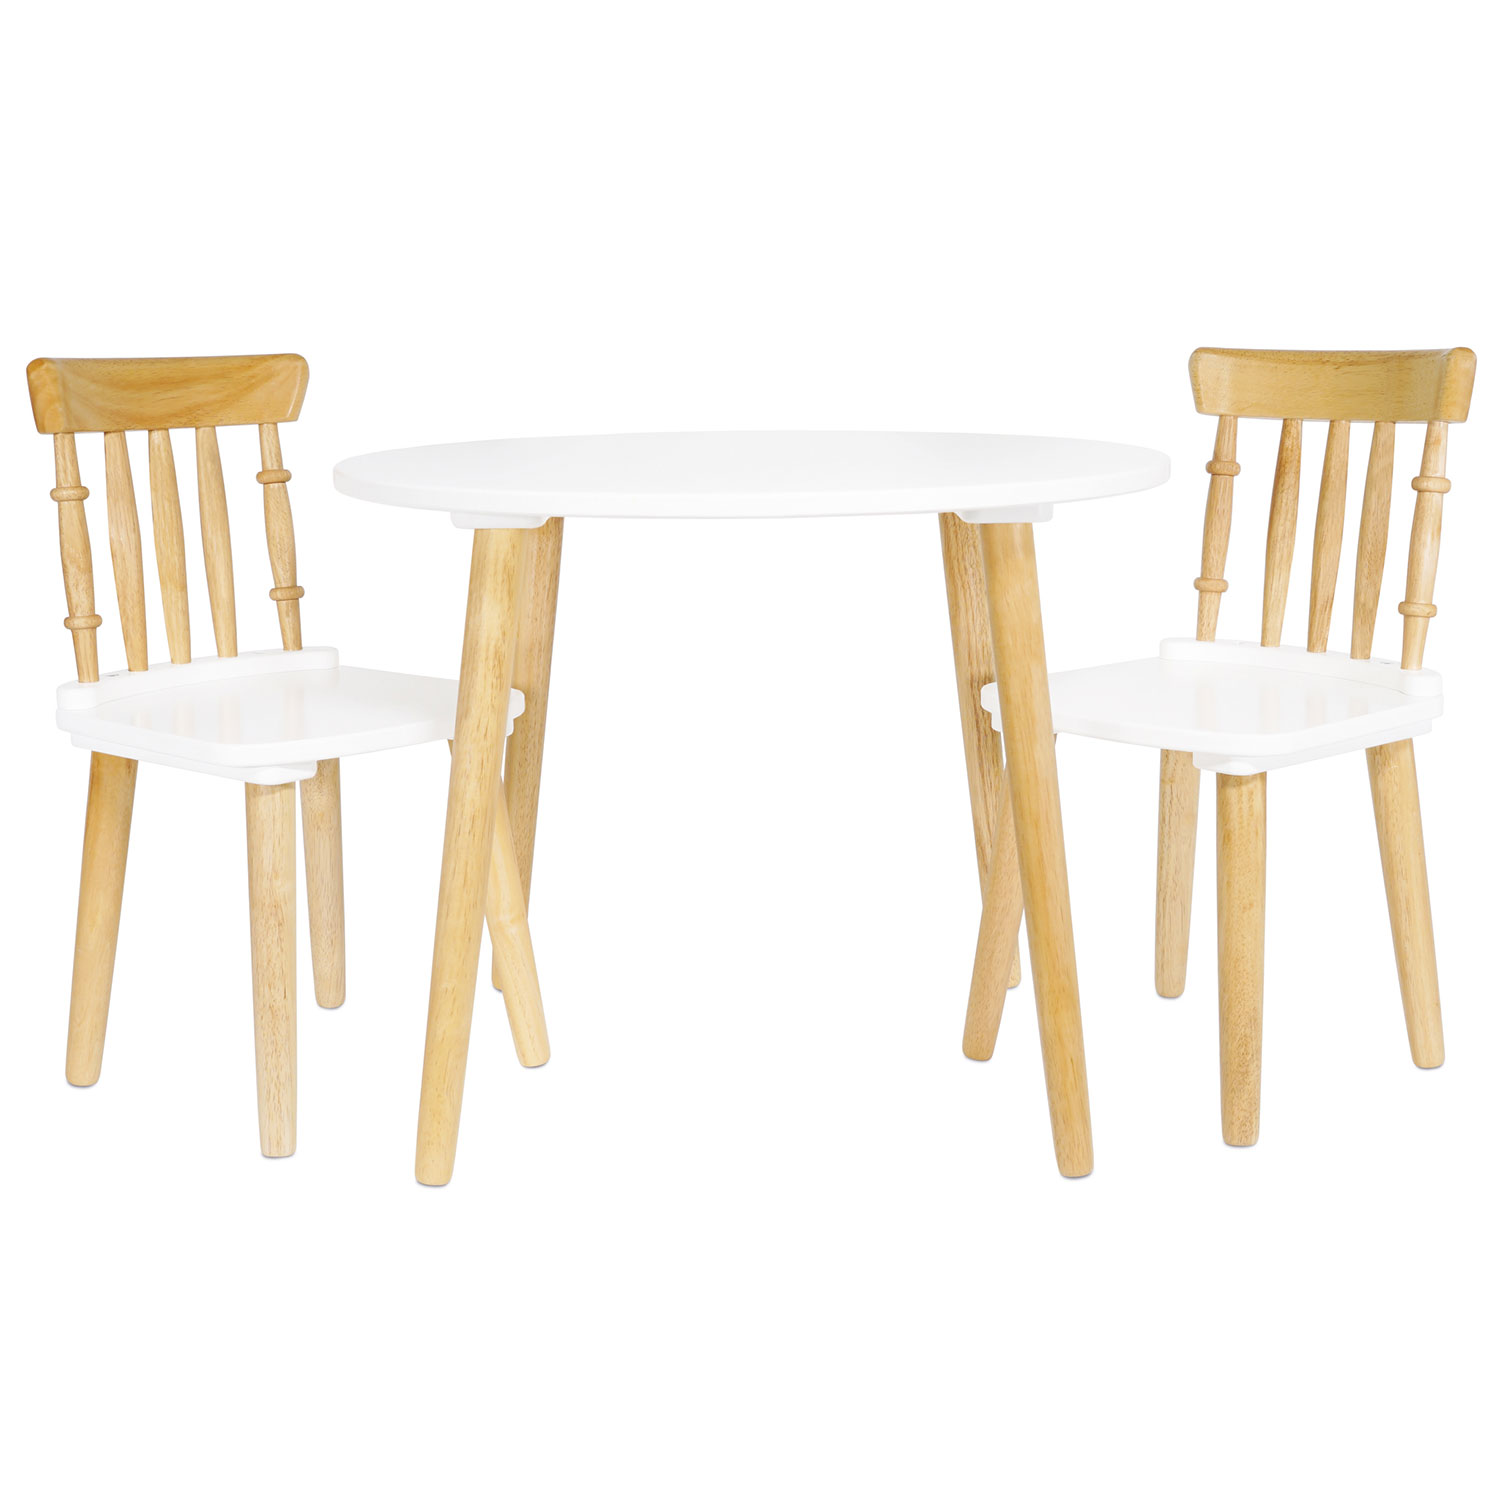 Tisch & zwei Stühle (Kindermöbel) /Childrens Wooden Table and Chairs